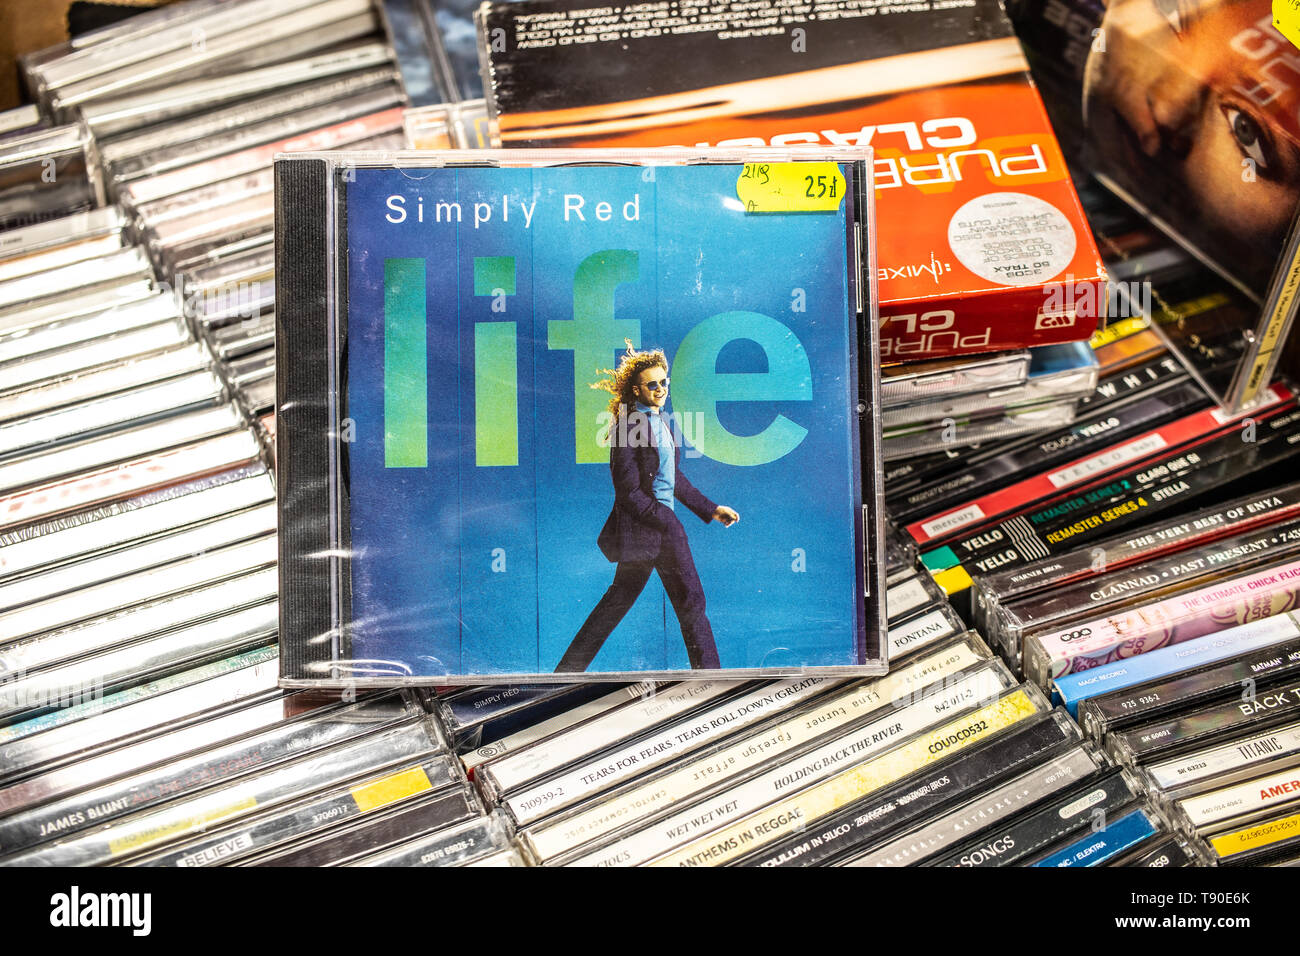 Corato, Polen, 11. Mai 2019: Simply Red LIFE CD Album auf der Anzeige für den Verkauf, den berühmten britischen Soul und Pop Band, Mick Hucknall, Sammlung Stockfoto